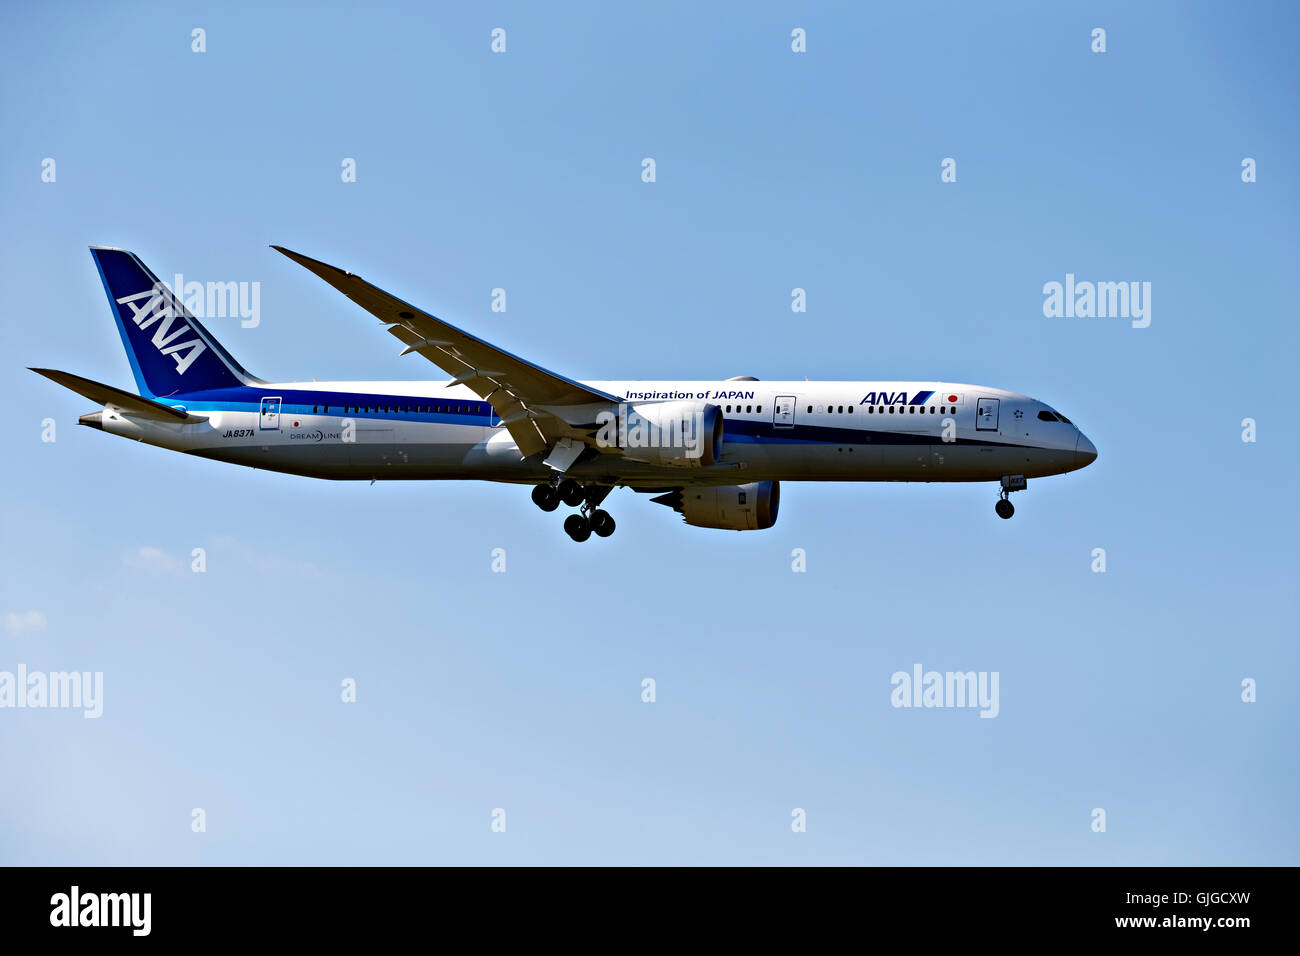 ANA Japan airlines Dream liner sur l'approche à l'atterrissage à l'aéroport Franz Josef Strauss, Munich, Haute-Bavière, Allemagne, Europe. Banque D'Images